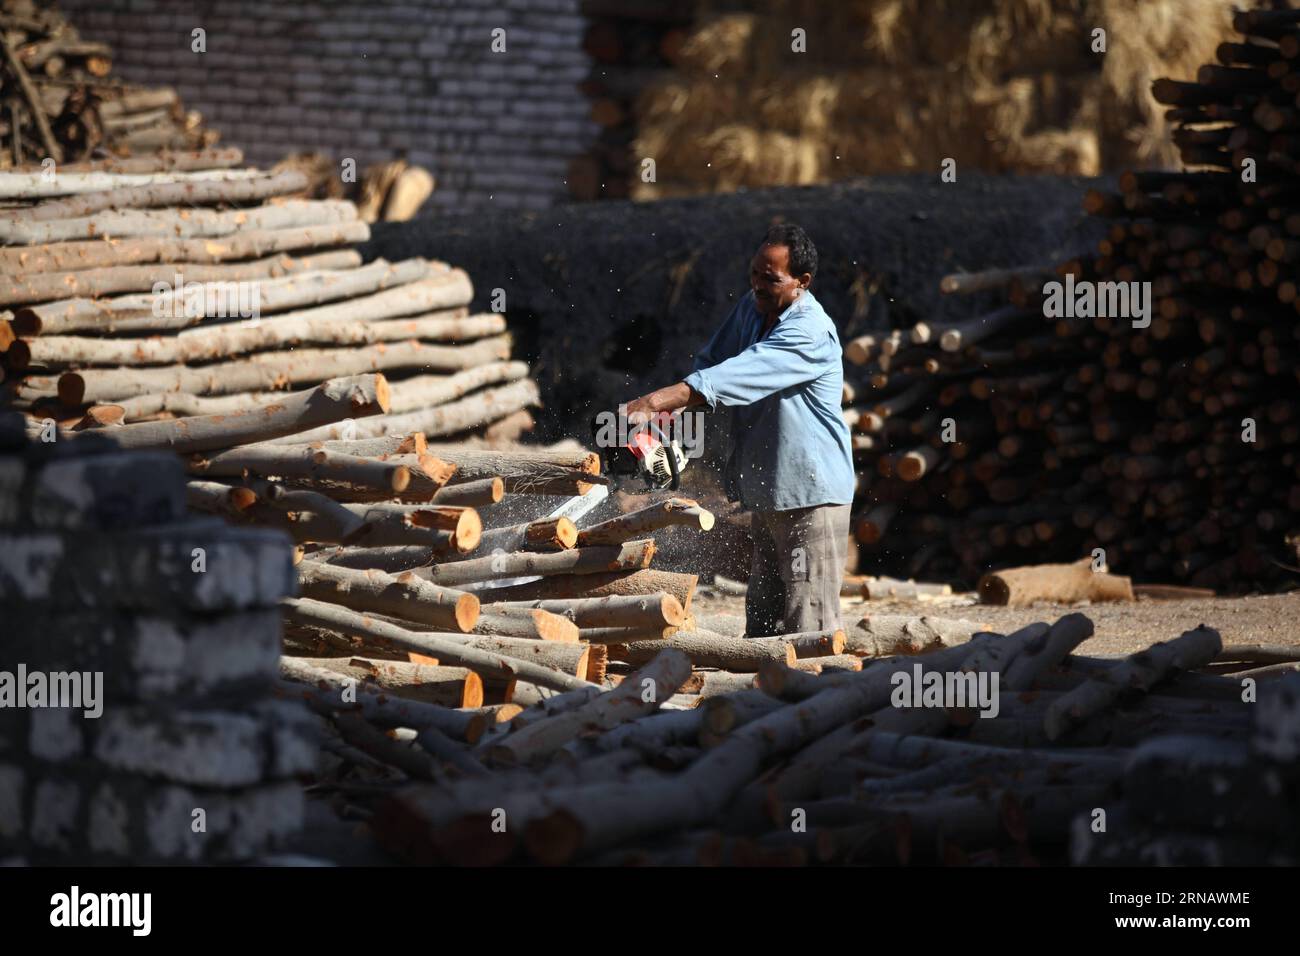 Un ouvrier égyptien du charbon de bois coupe du bois pour fabriquer du charbon dans une usine de charbon de Sharqia, en Égypte, le 7 février 2016. Il y avait environ 300 usines de charbon en Egypte avec plus de 5 000 travailleurs employés. Mais le gouvernement égyptien en ferme maintenant beaucoup pour réduire la pollution environnementale causée par les unités industrielles de charbon de bois. )(zhf) EGYPTE-SHARQIA-PRODUCTION DE CHARBON AhmedxGomaa PUBLICATIONxNOTxINxCHN à l'Egyptian Charcoal travailleur coupe des bois pour faire du charbon À une usine de charbon à Sharqia Egypte LE 7 2016 février il y avait environ 300 usines de charbon en Egypte avec plus de 5 000 travailleurs Emplo Banque D'Images